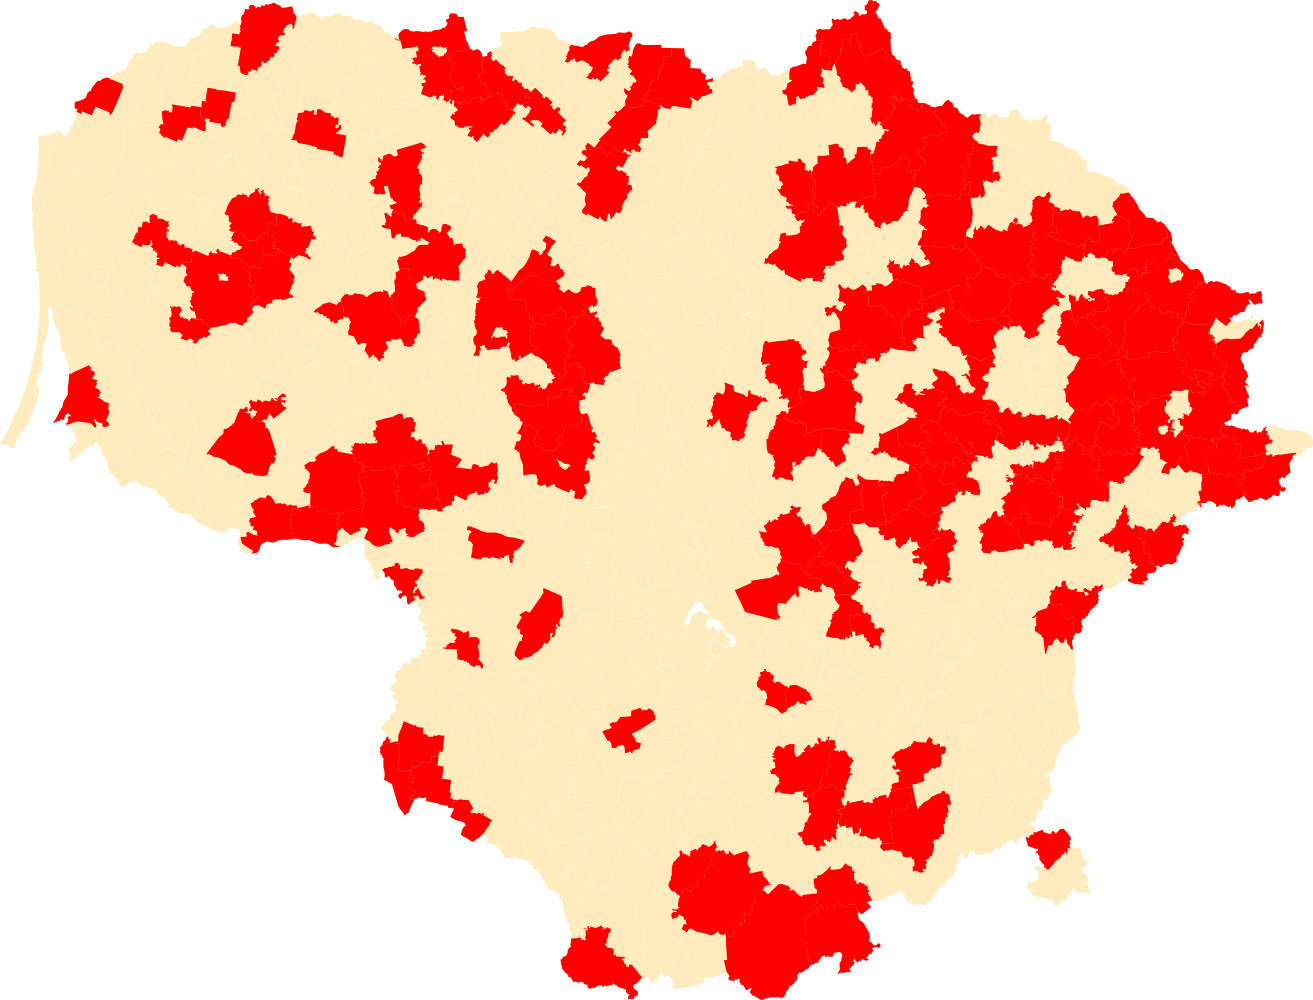 Gyventojų tankumas Lietuvoje